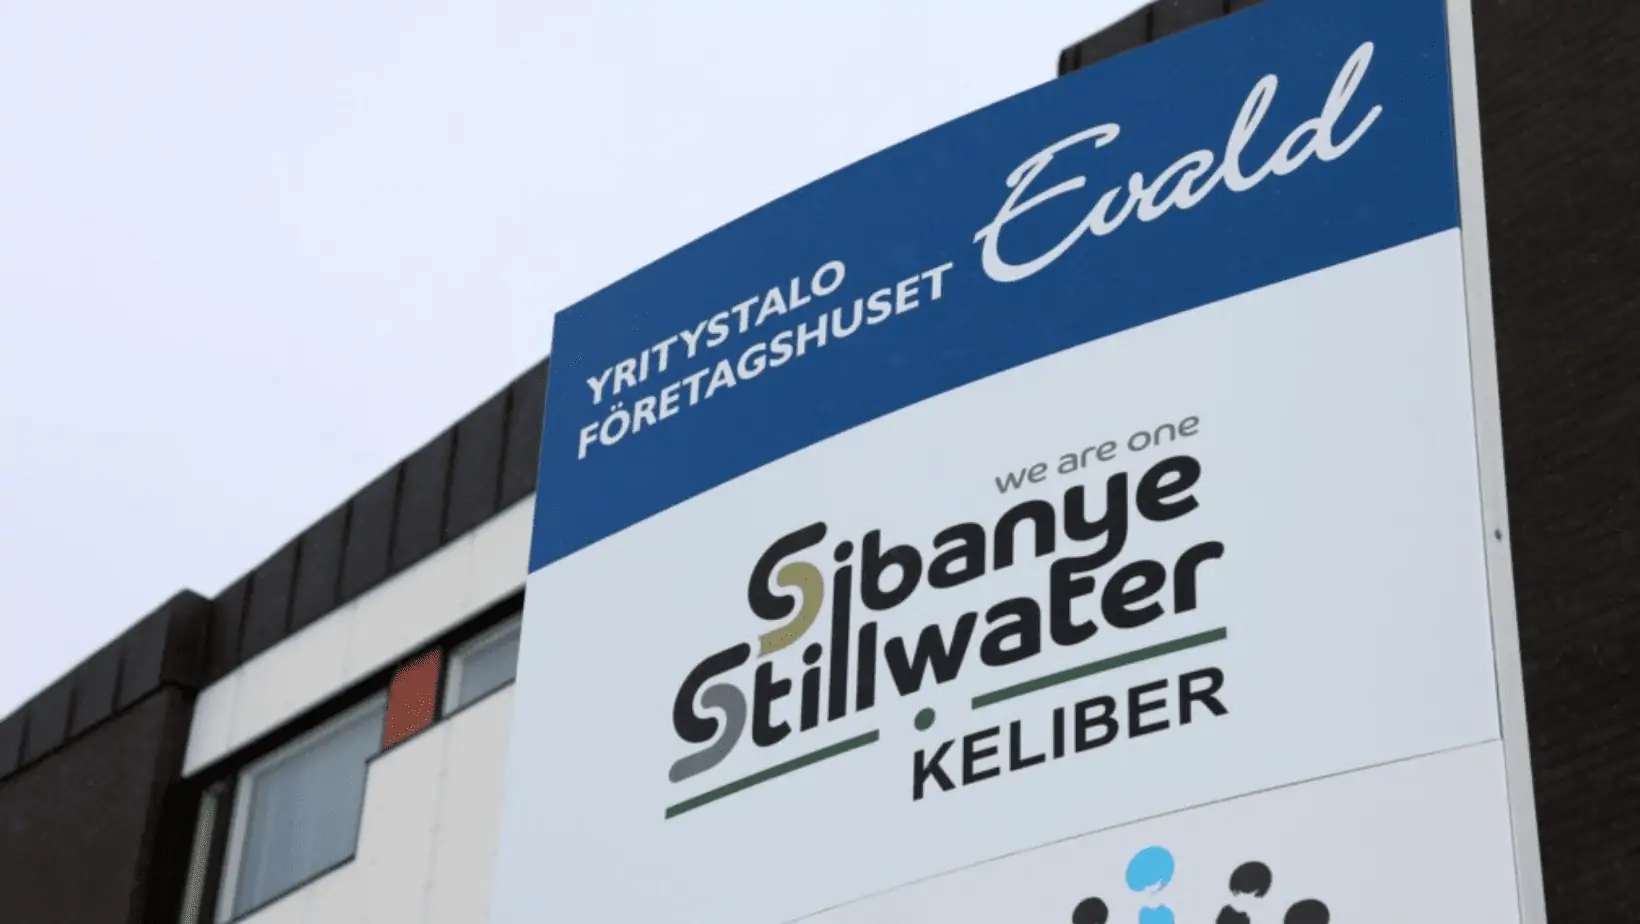 Sibanye-Stillwater Halts Operations After Shaft Incident